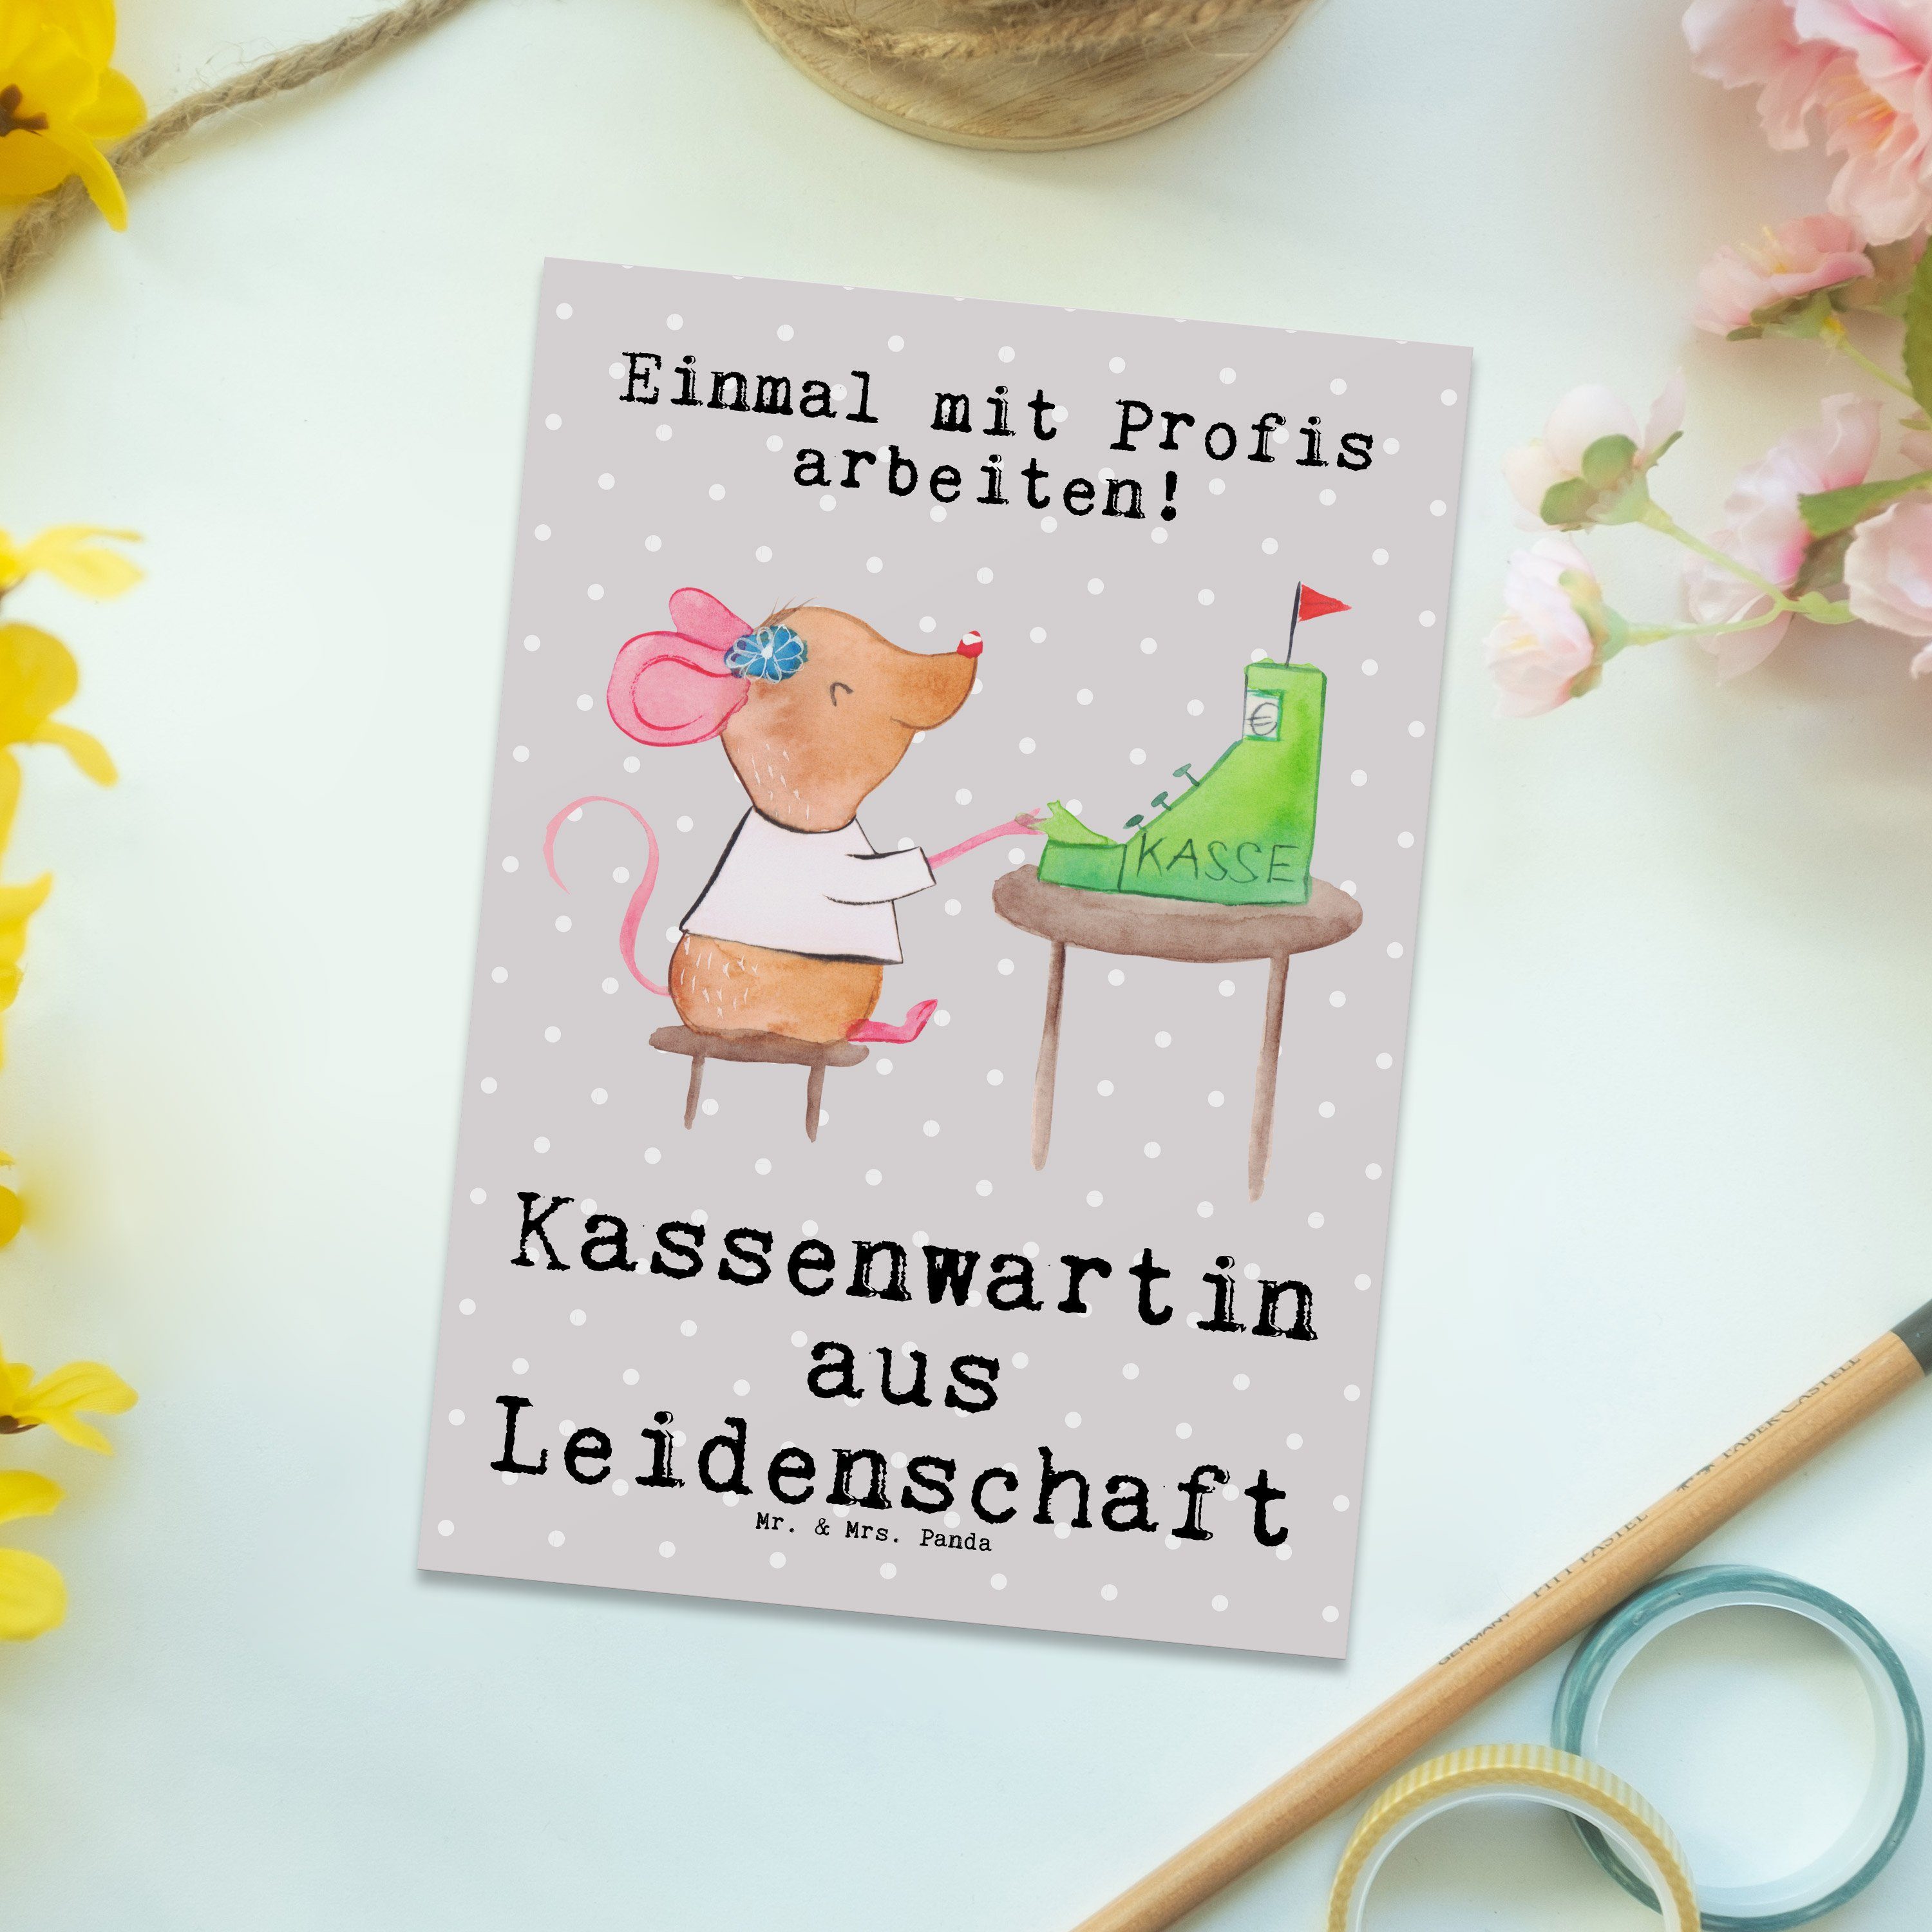 Mr. & Mrs. Panda Postkarte Kassenwartin aus Leidenschaft - Grau Pastell - Geschenk, Ausbildung